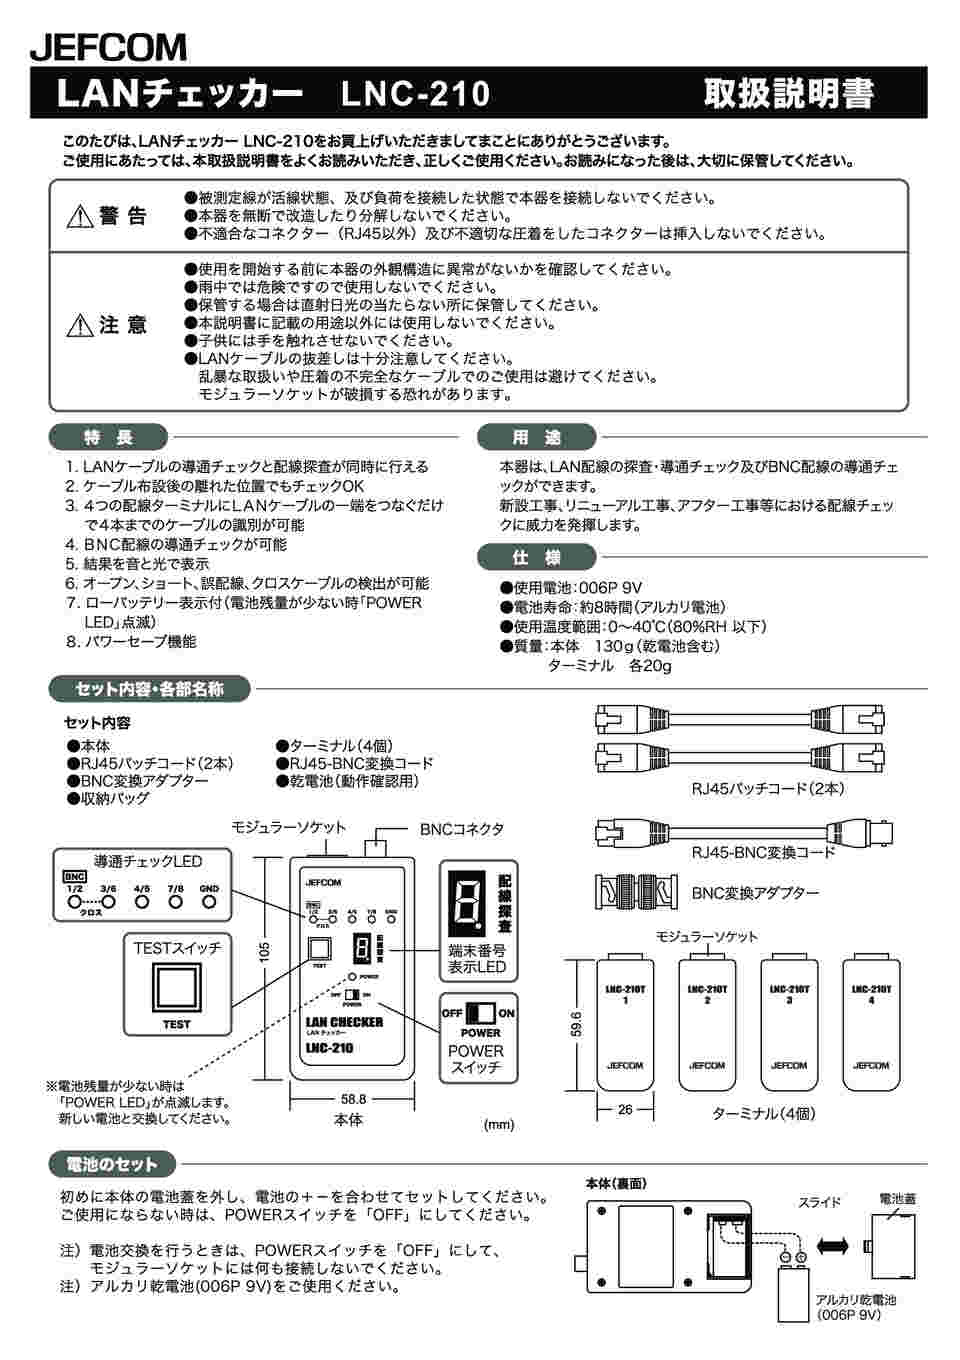 61-8538-40 LANチェッカー LNC-210 【AXEL】 アズワン